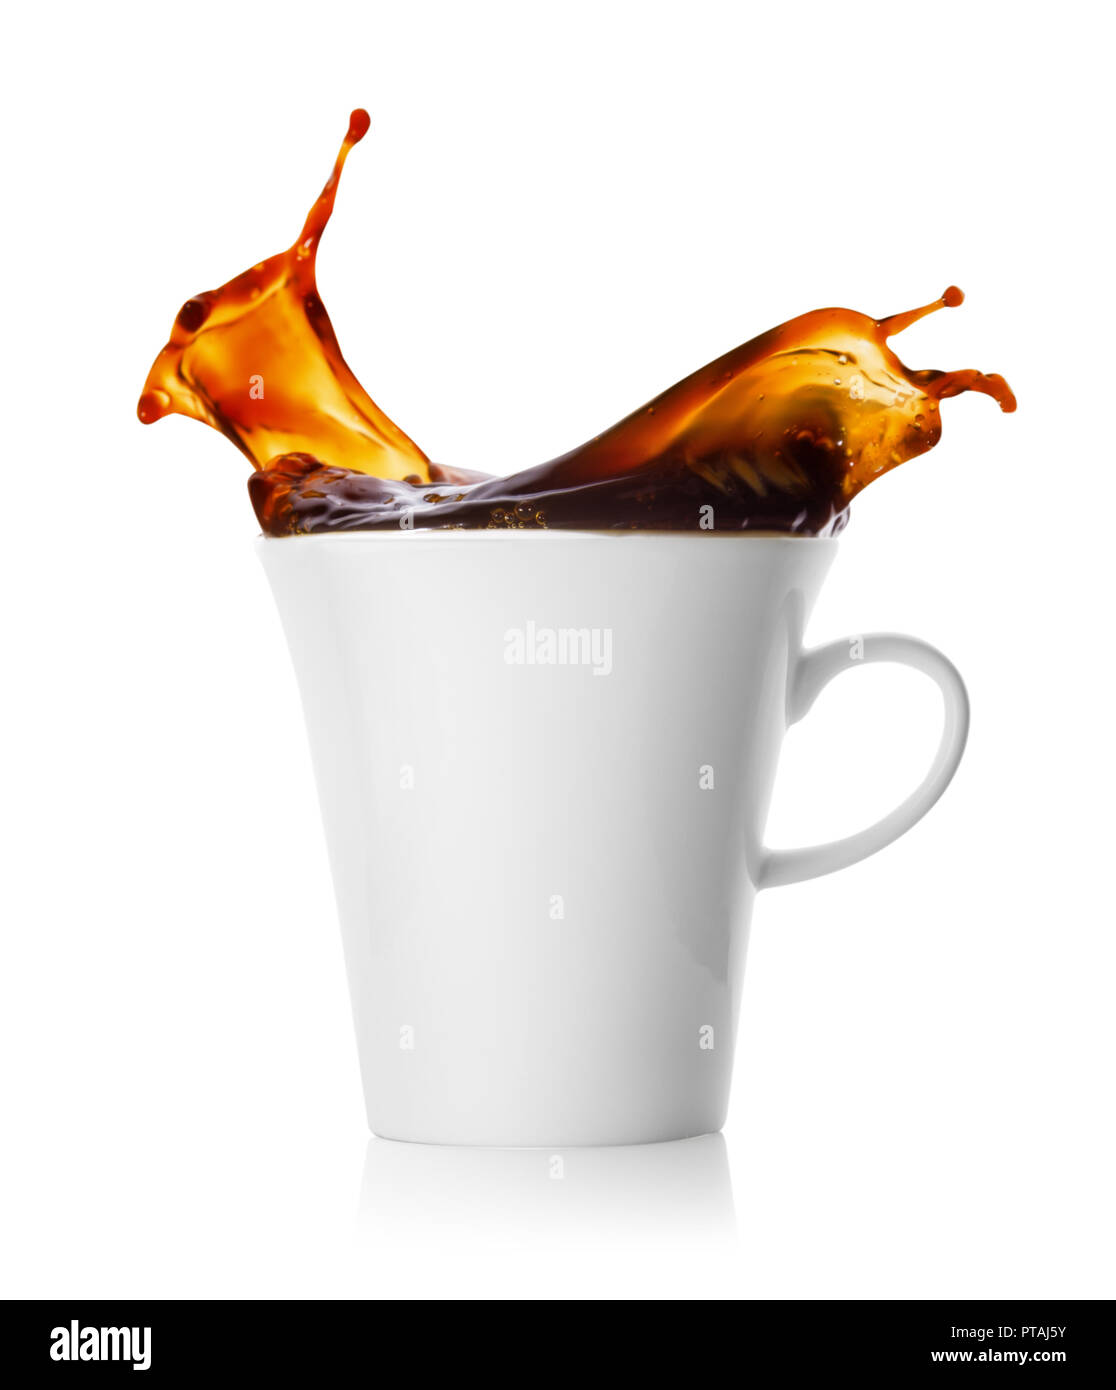 Touche de café dans une tasse isolé sur fond blanc Banque D'Images